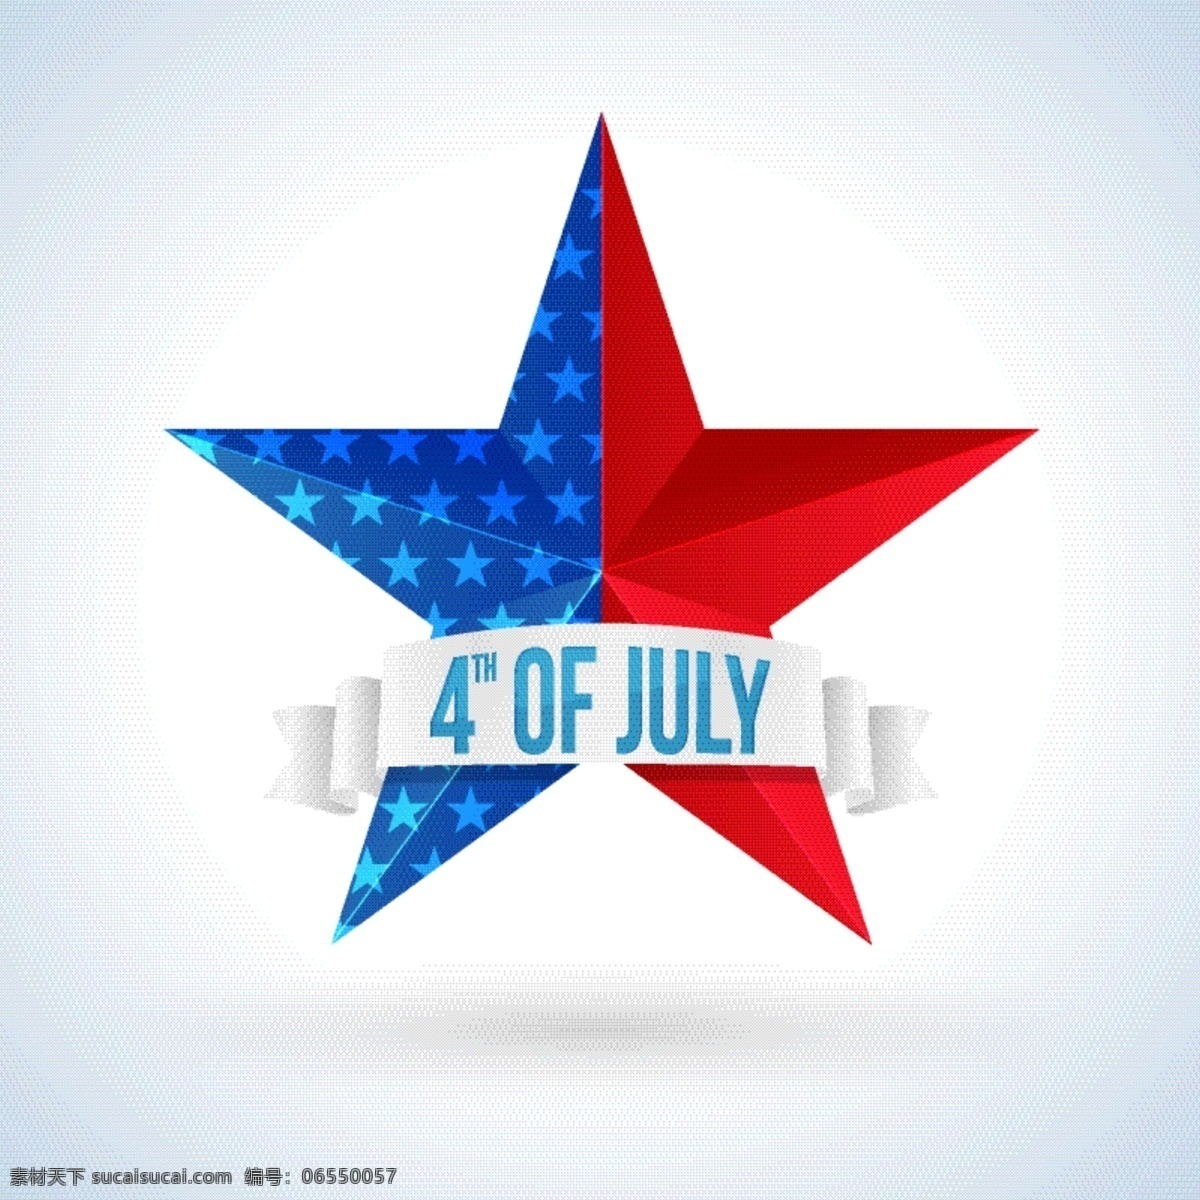 独立日 装饰 明星 背景 庆典 节日 庆祝 美国 传统 自由 选举 天 明星背景 爱国 独立 团结 平等